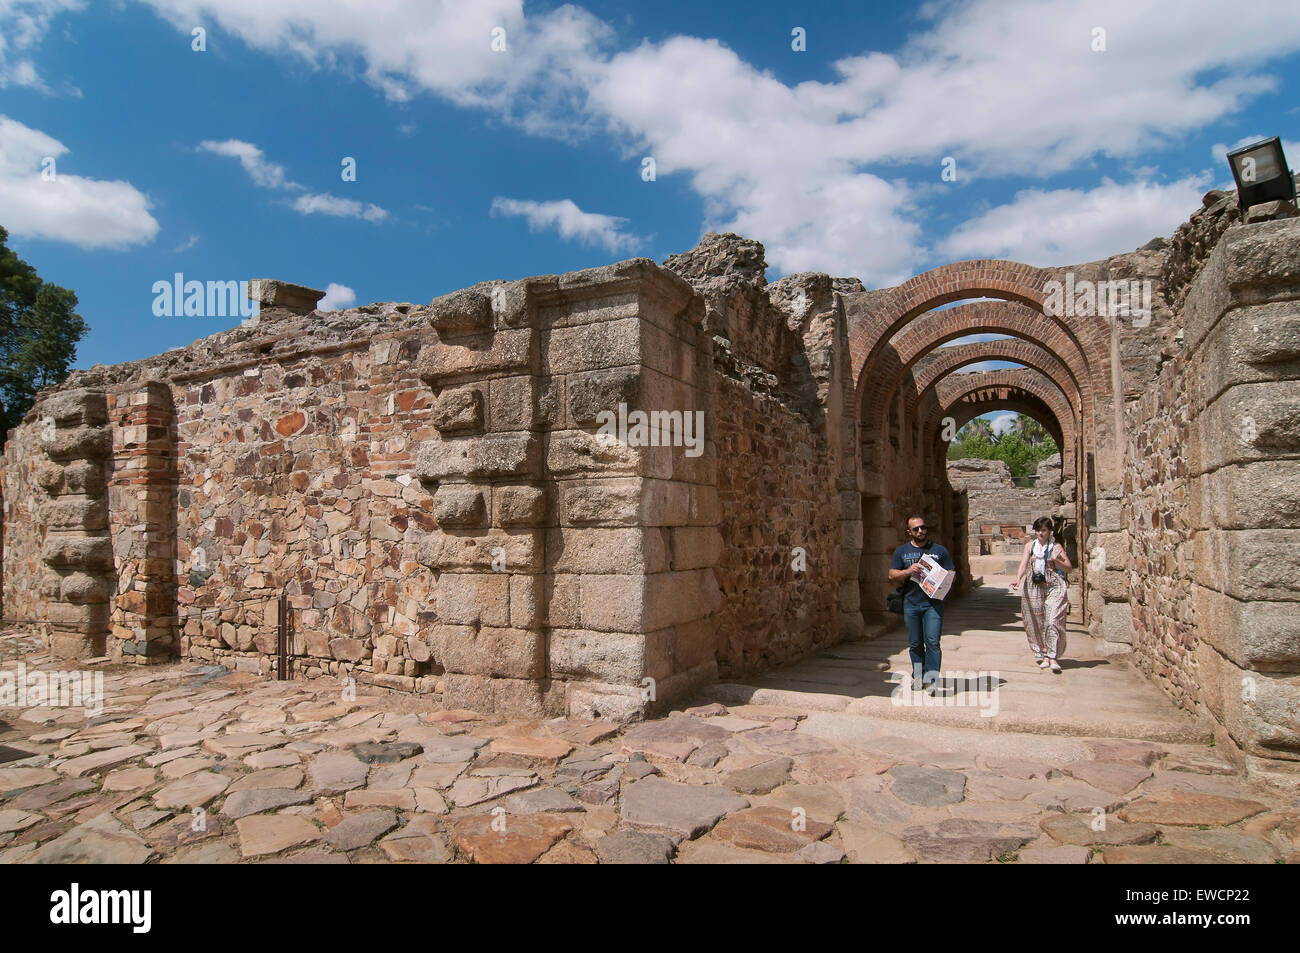 Amphithéâtre romain - accès, Merida, Badajoz province, région de l'Estrémadure, Espagne, Europe Banque D'Images